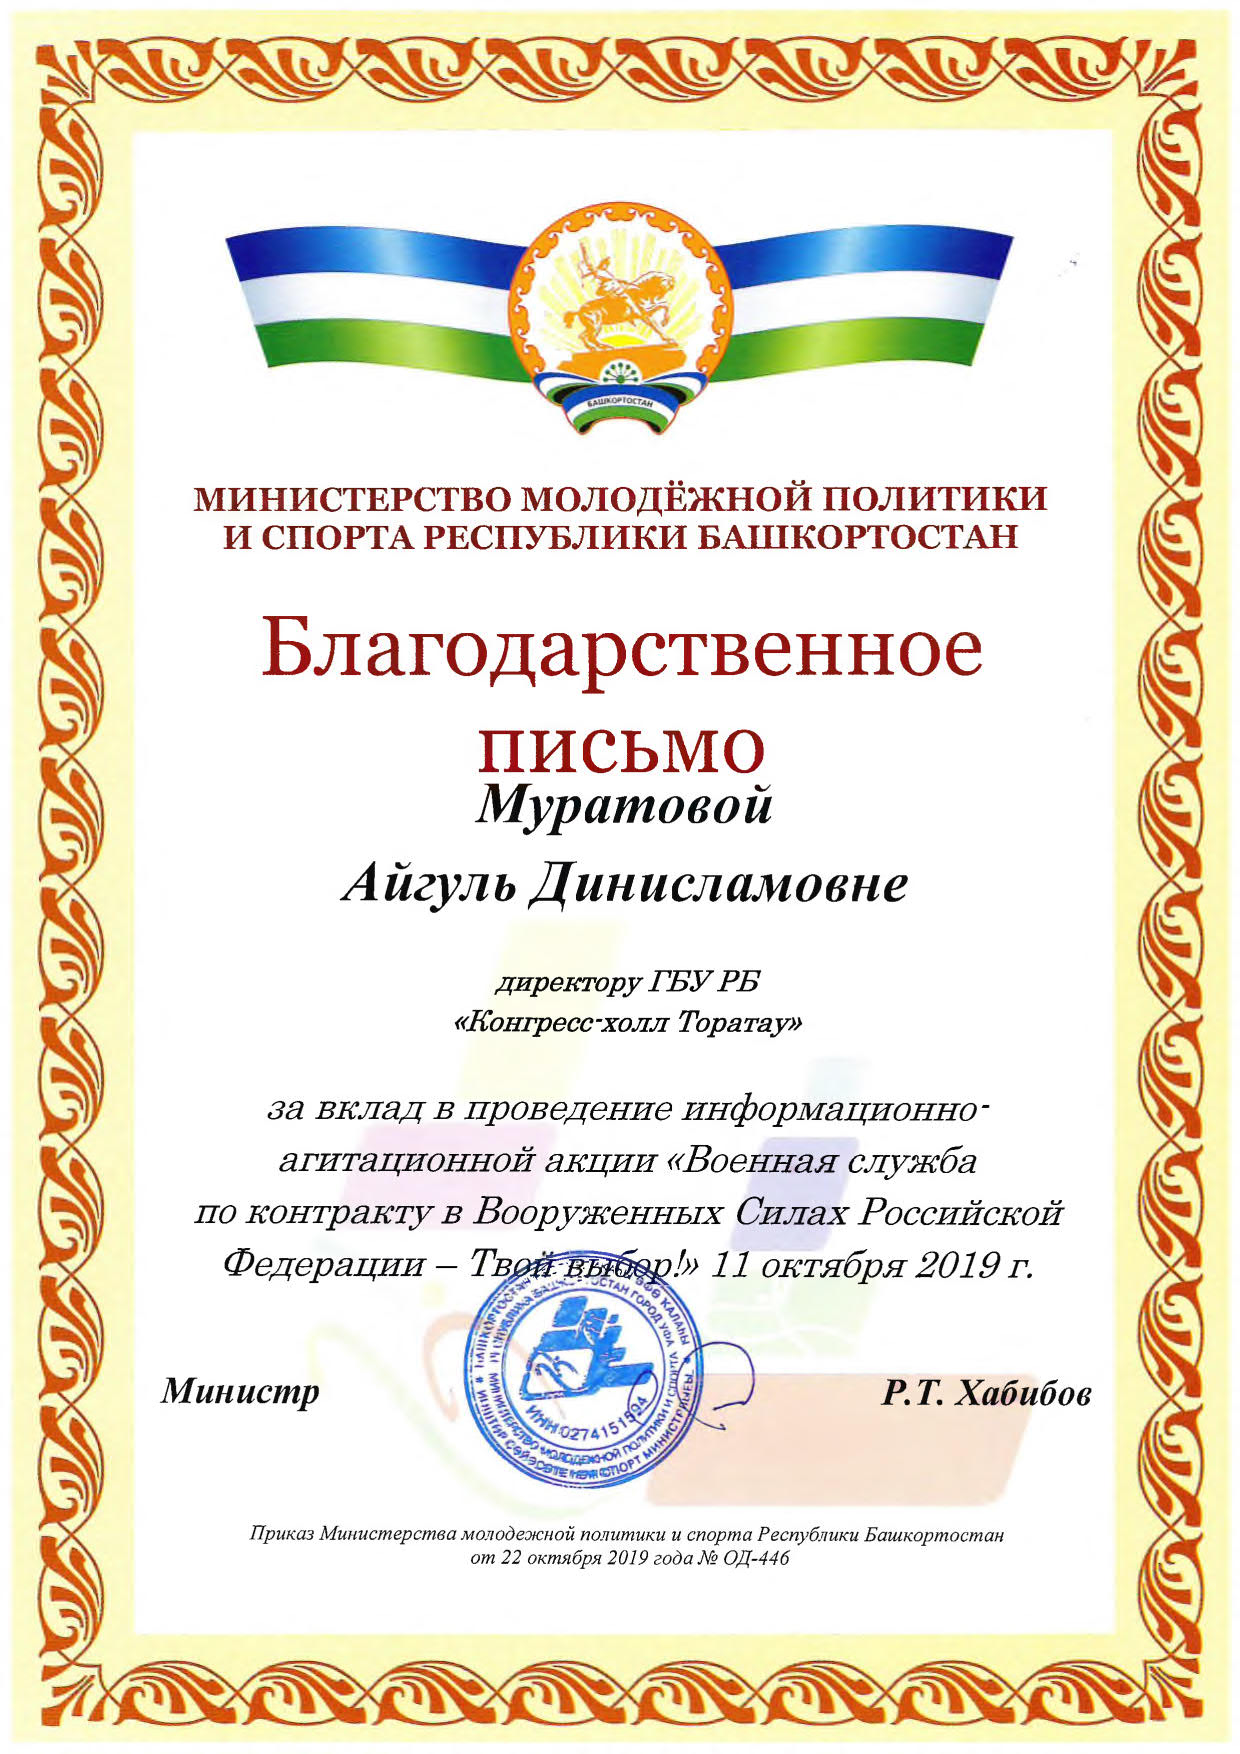 Благодарственное письмо от Министерства молодежной политики и спорта Республики Башкортостан